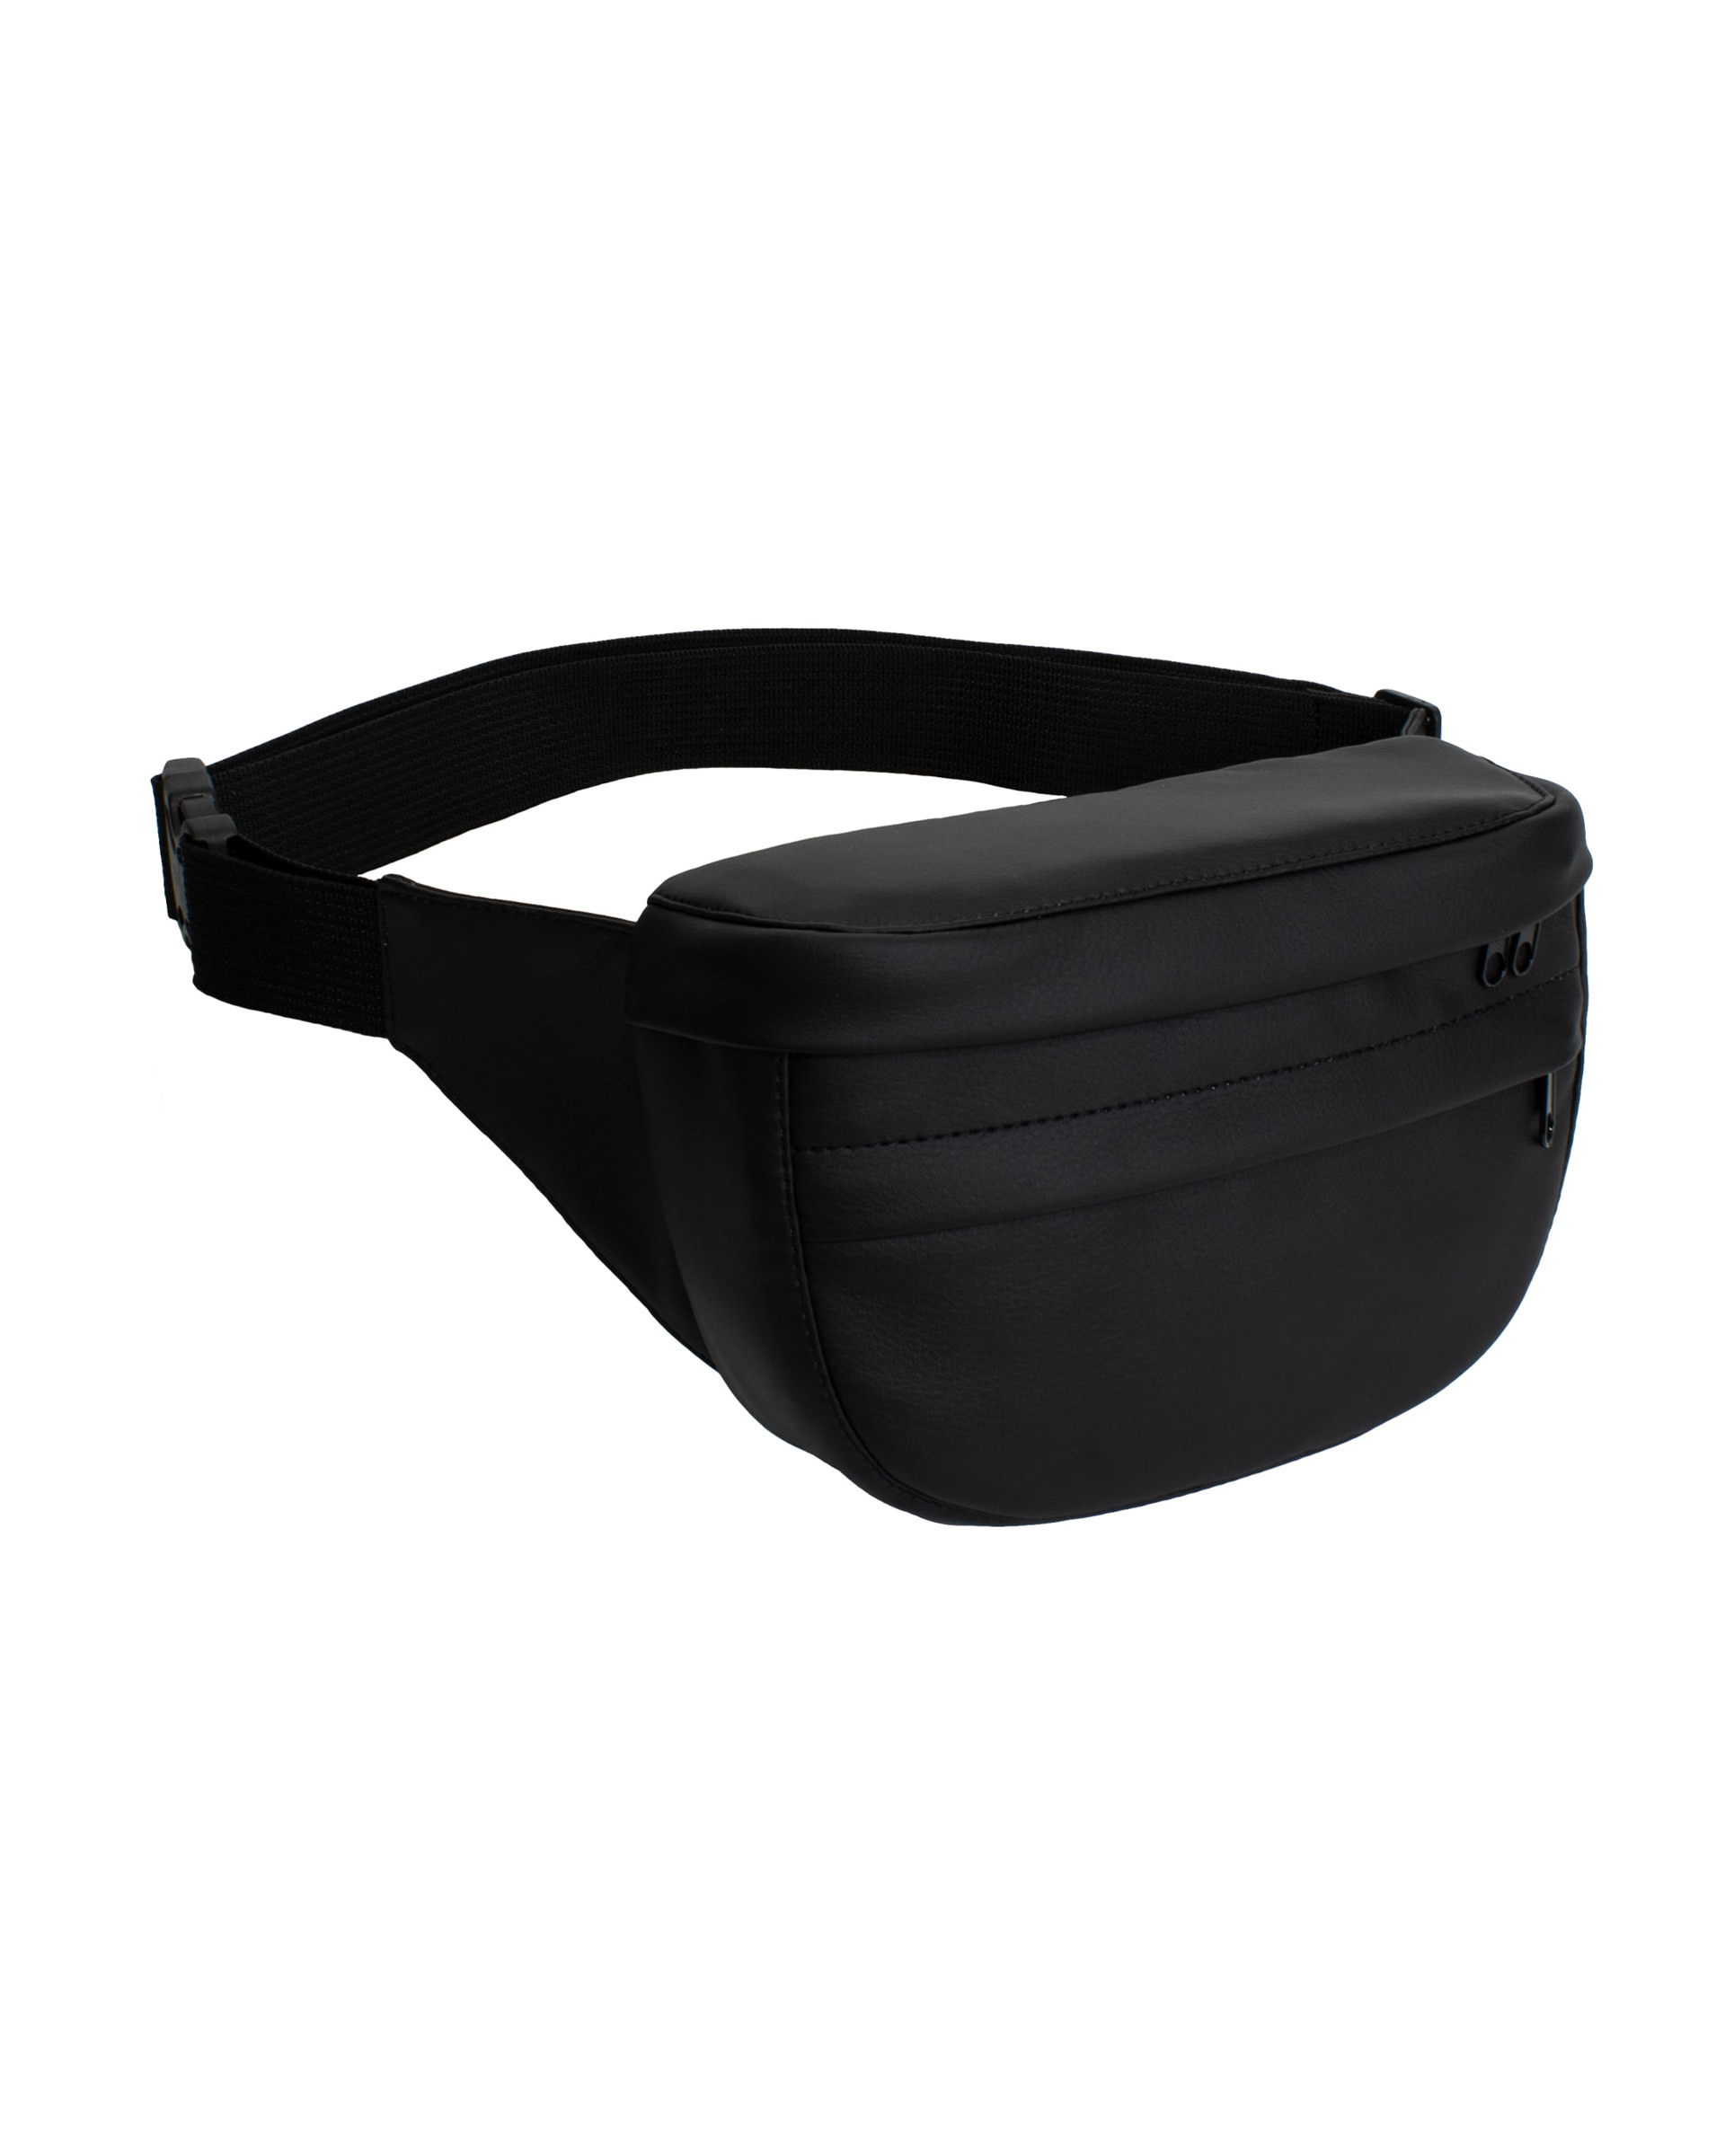 Belt bag Surikat model: Tornado color: black eco-leather. Buy in Ukraine -  Surikat - Ukrainian manufacturer